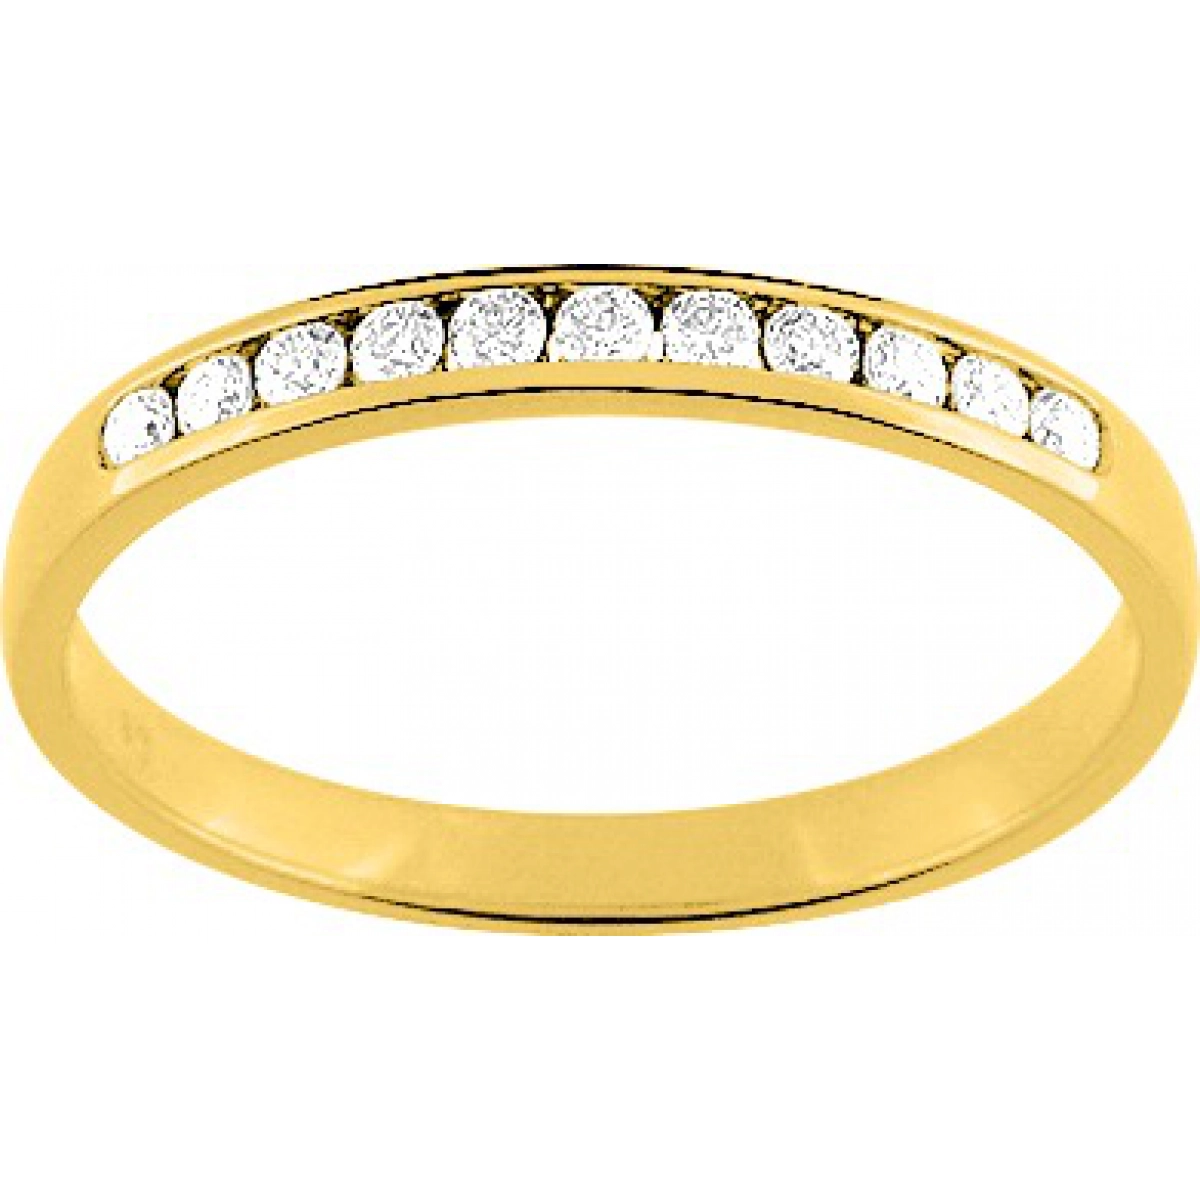 Anel de Casamento com 11 diamante 0.15ct 9Kt Ouro amarelo 9L023JB4.14 Tamanho espanhol: 54